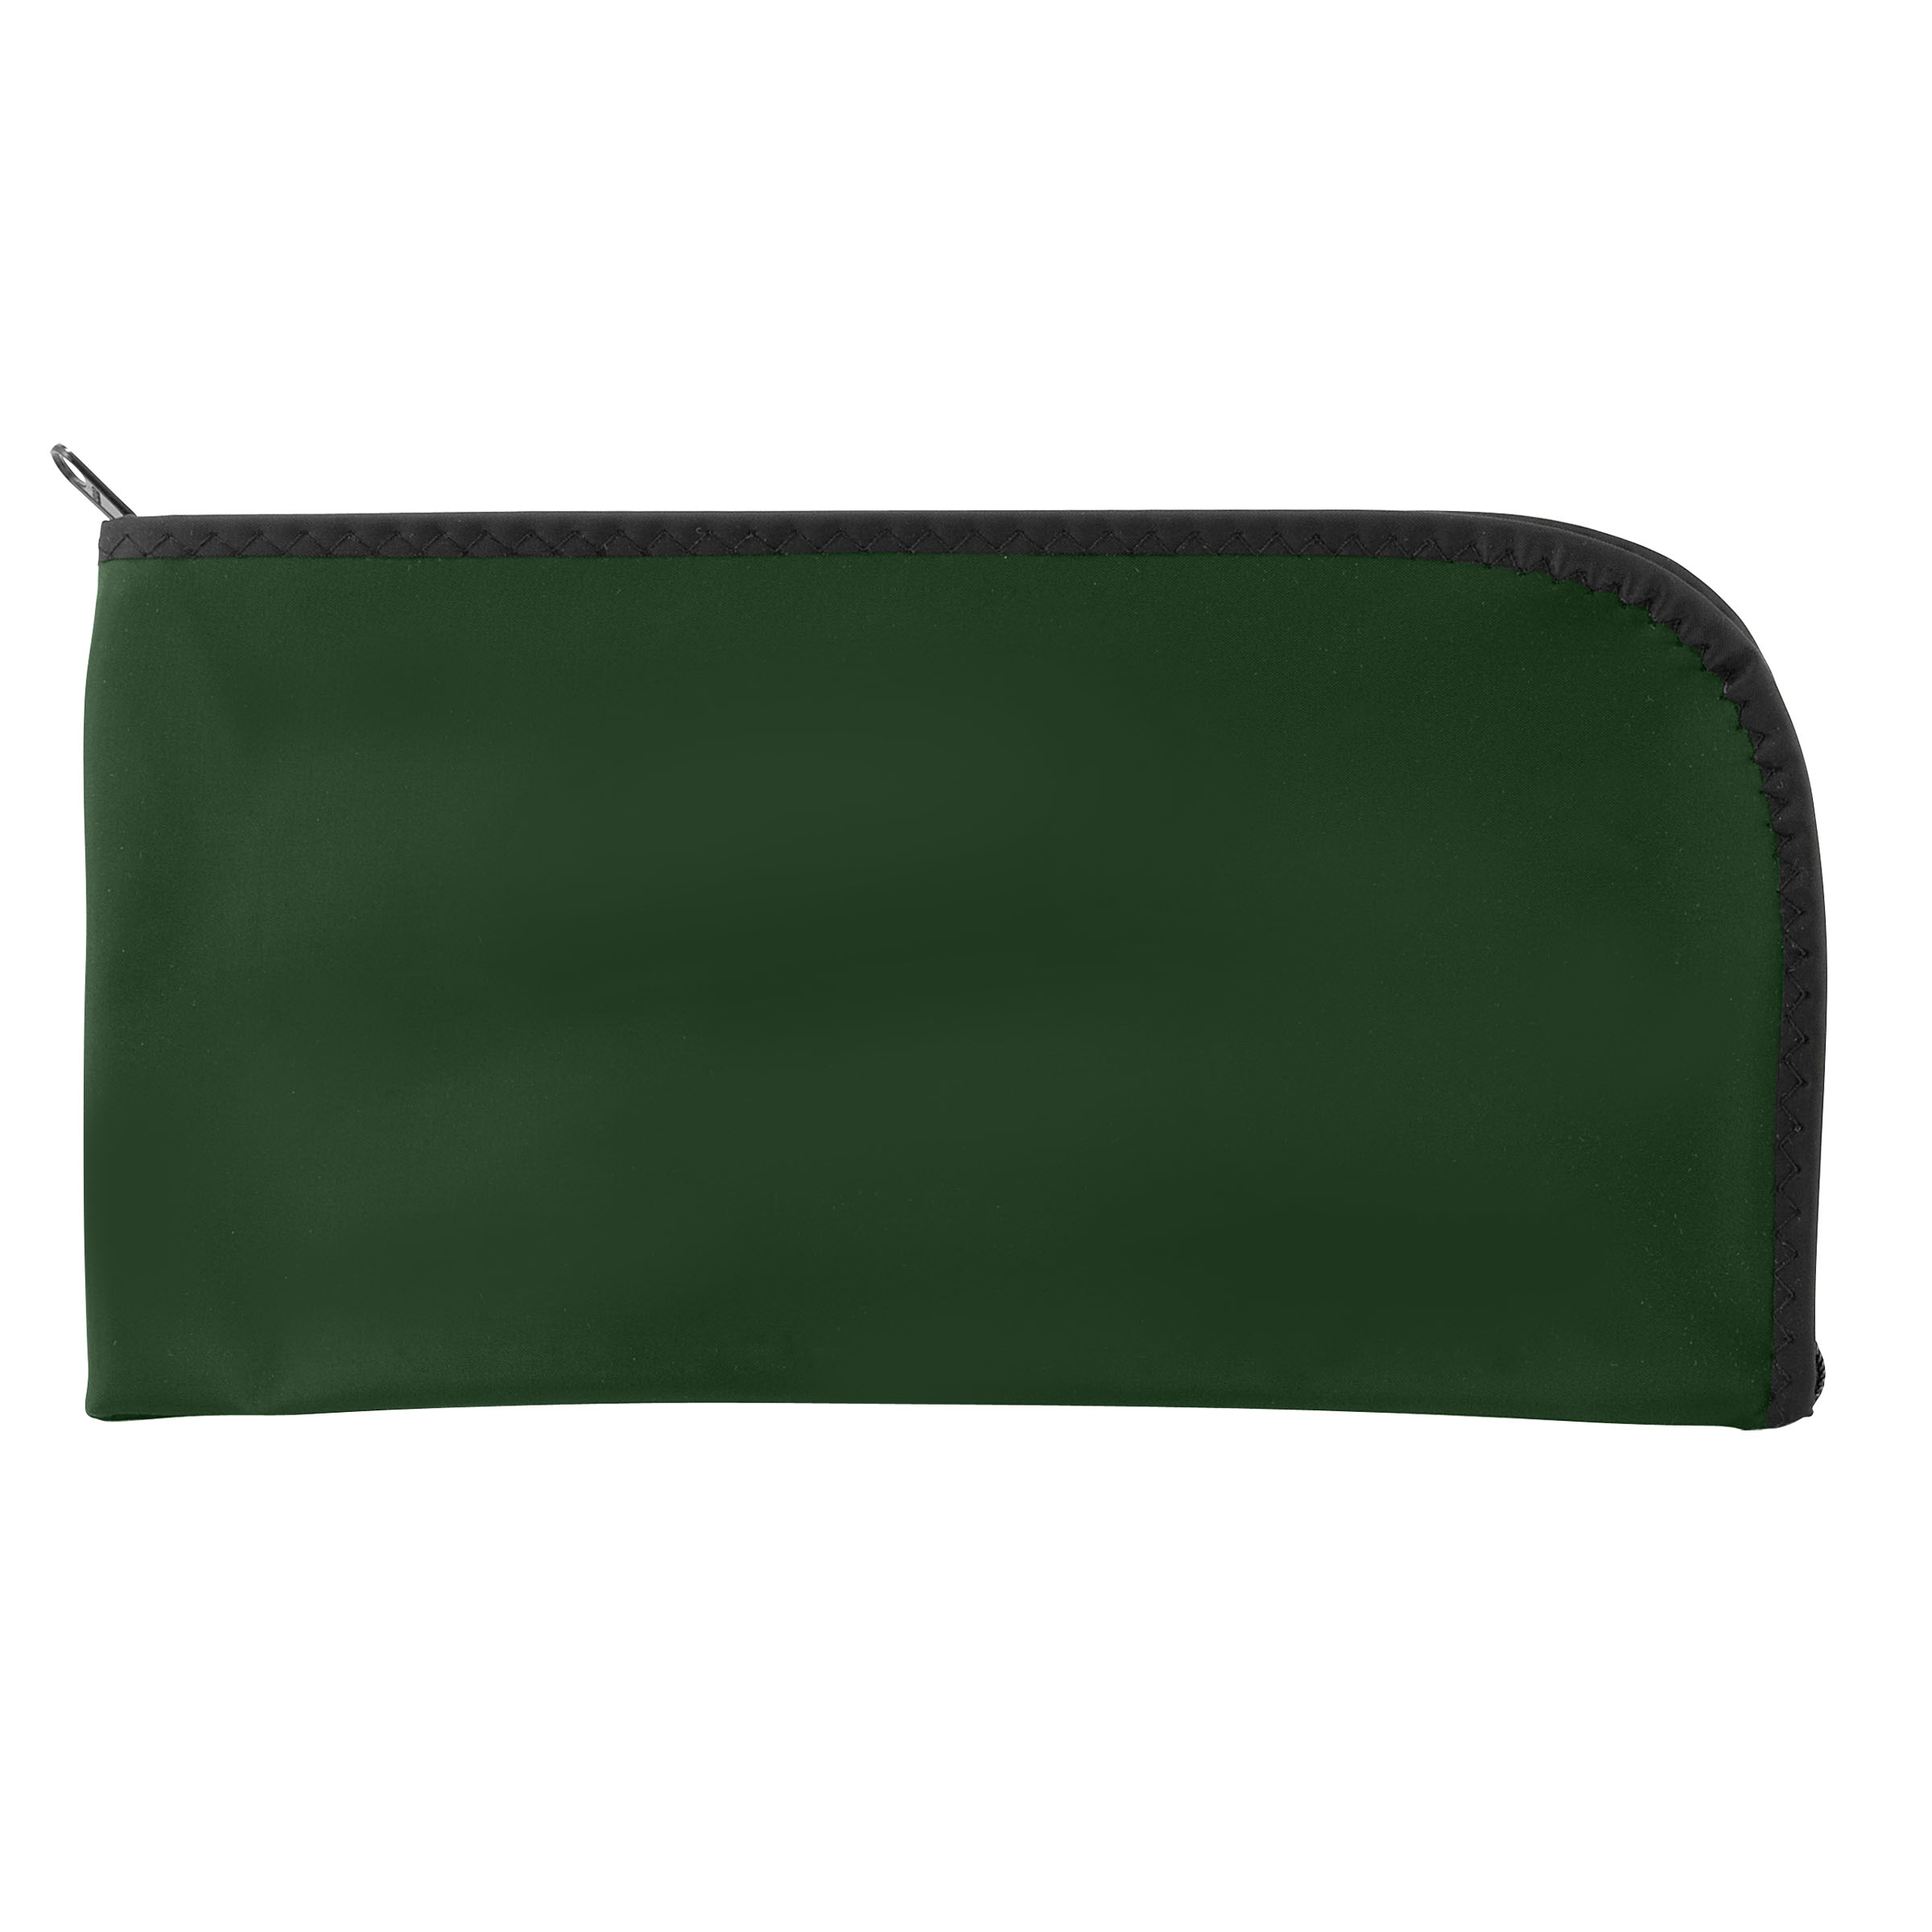 Curved Zipper Bank Bag - Laminated Nylon Image Selector